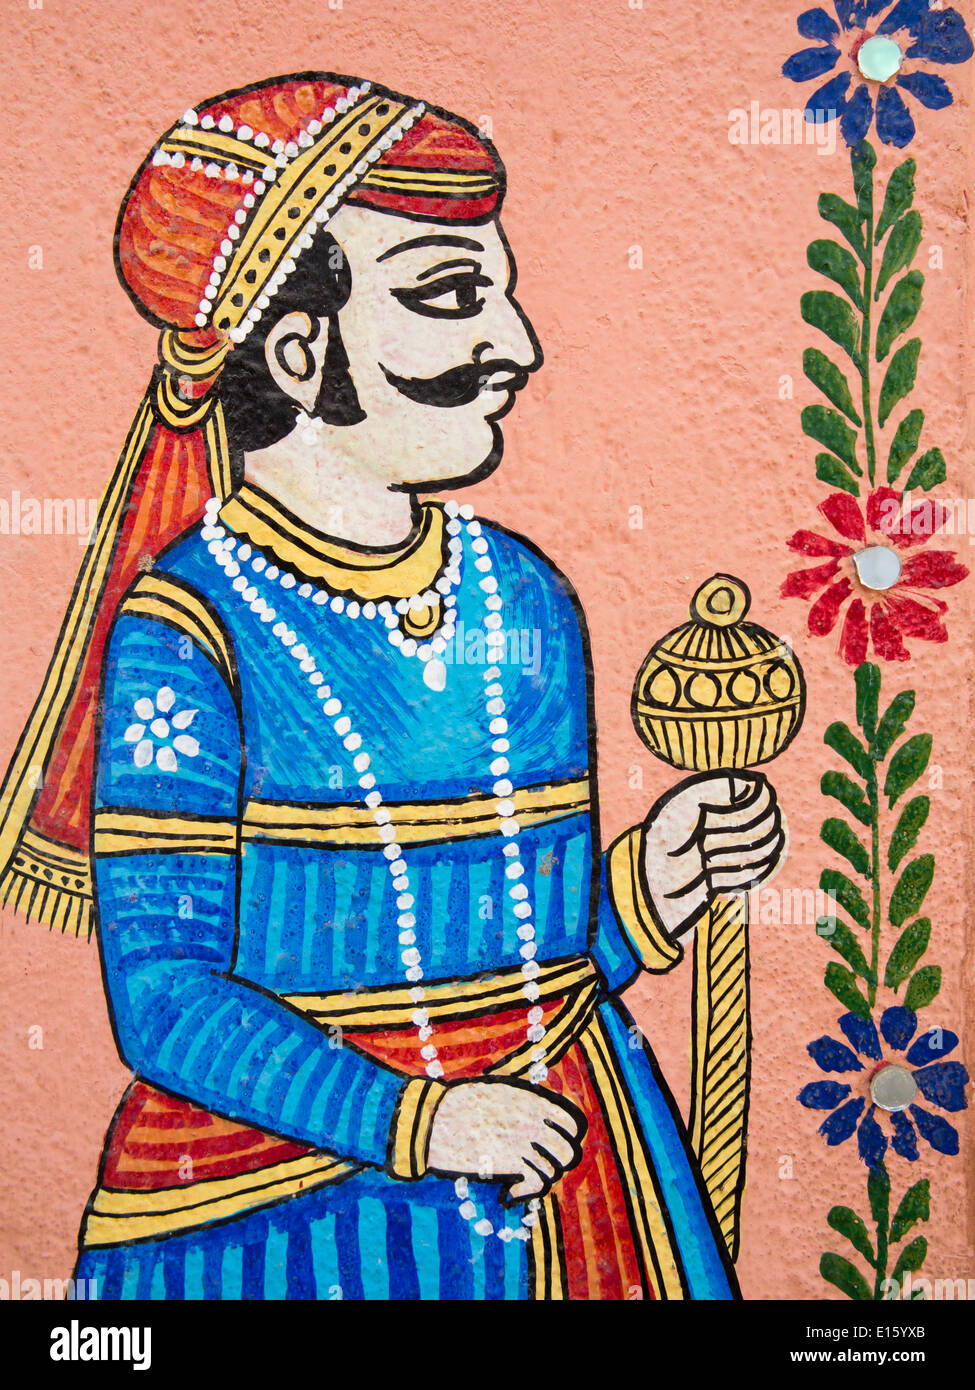 L'Inde, Rajasthan, Udaipur, la peinture murale traditionnelle Rajput de l'homme Banque D'Images